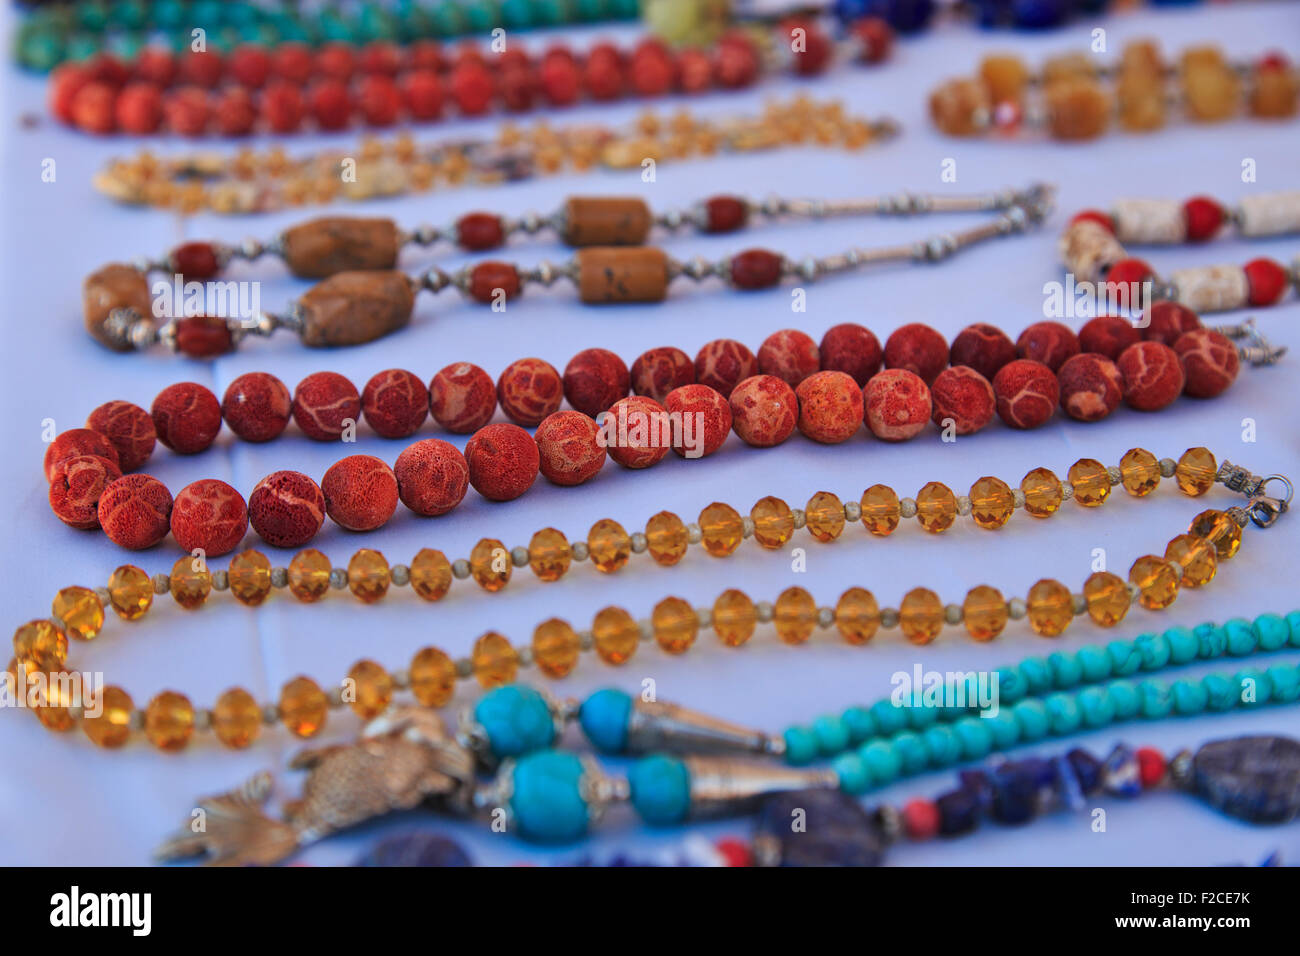 rosary beads in petra jordan F2CE7K